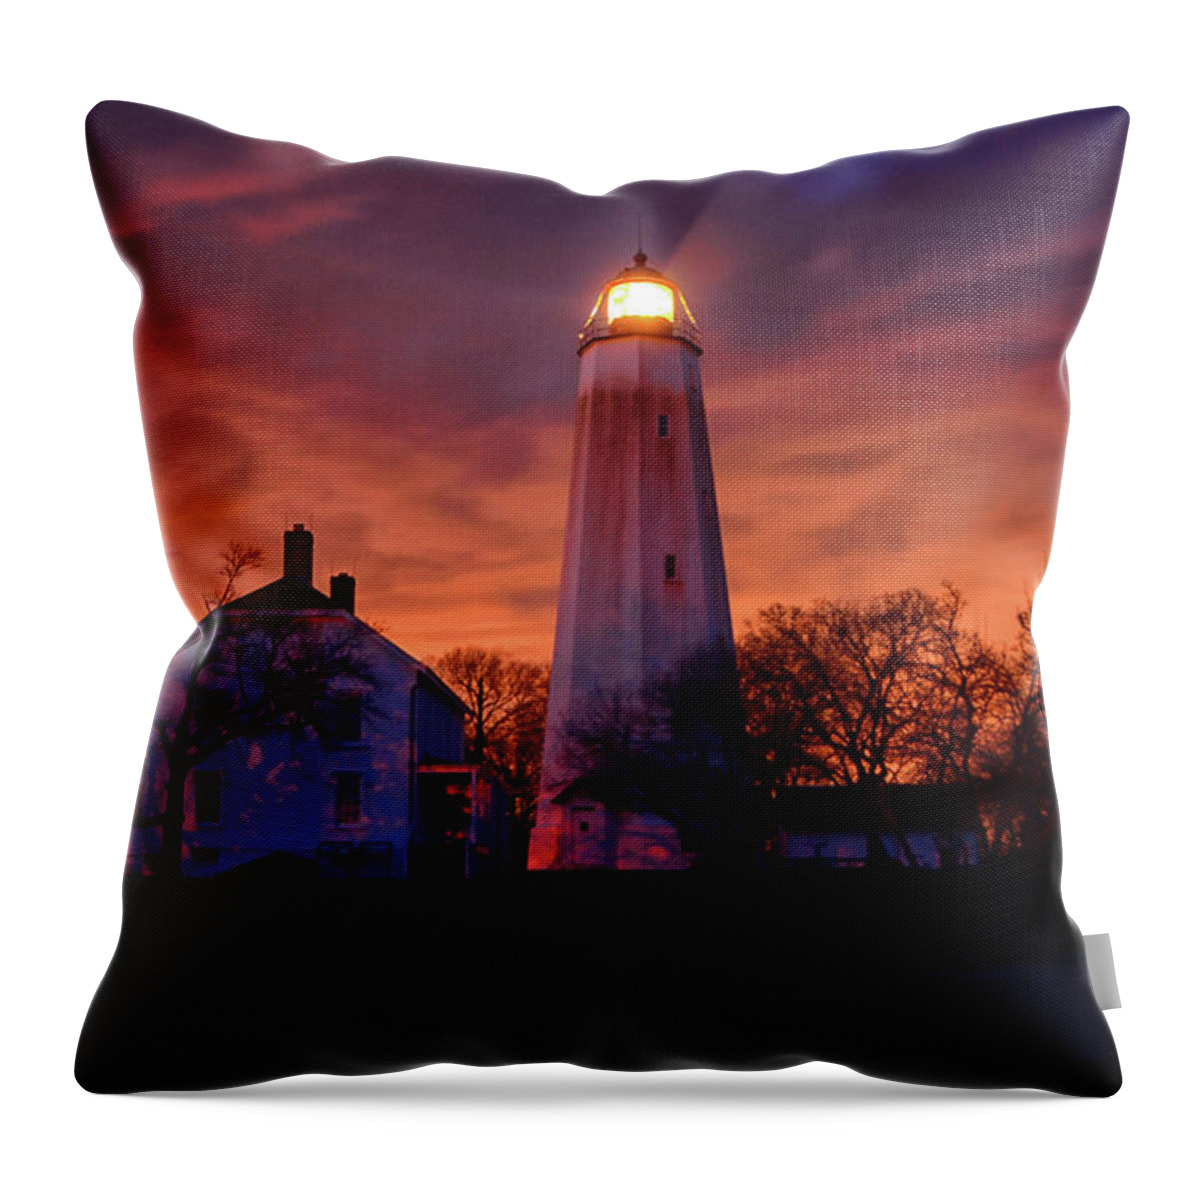 Sandy Hook Lighthouse Throw Pillow featuring the photograph Sandy Hook Lighthouse by Raymond Salani III